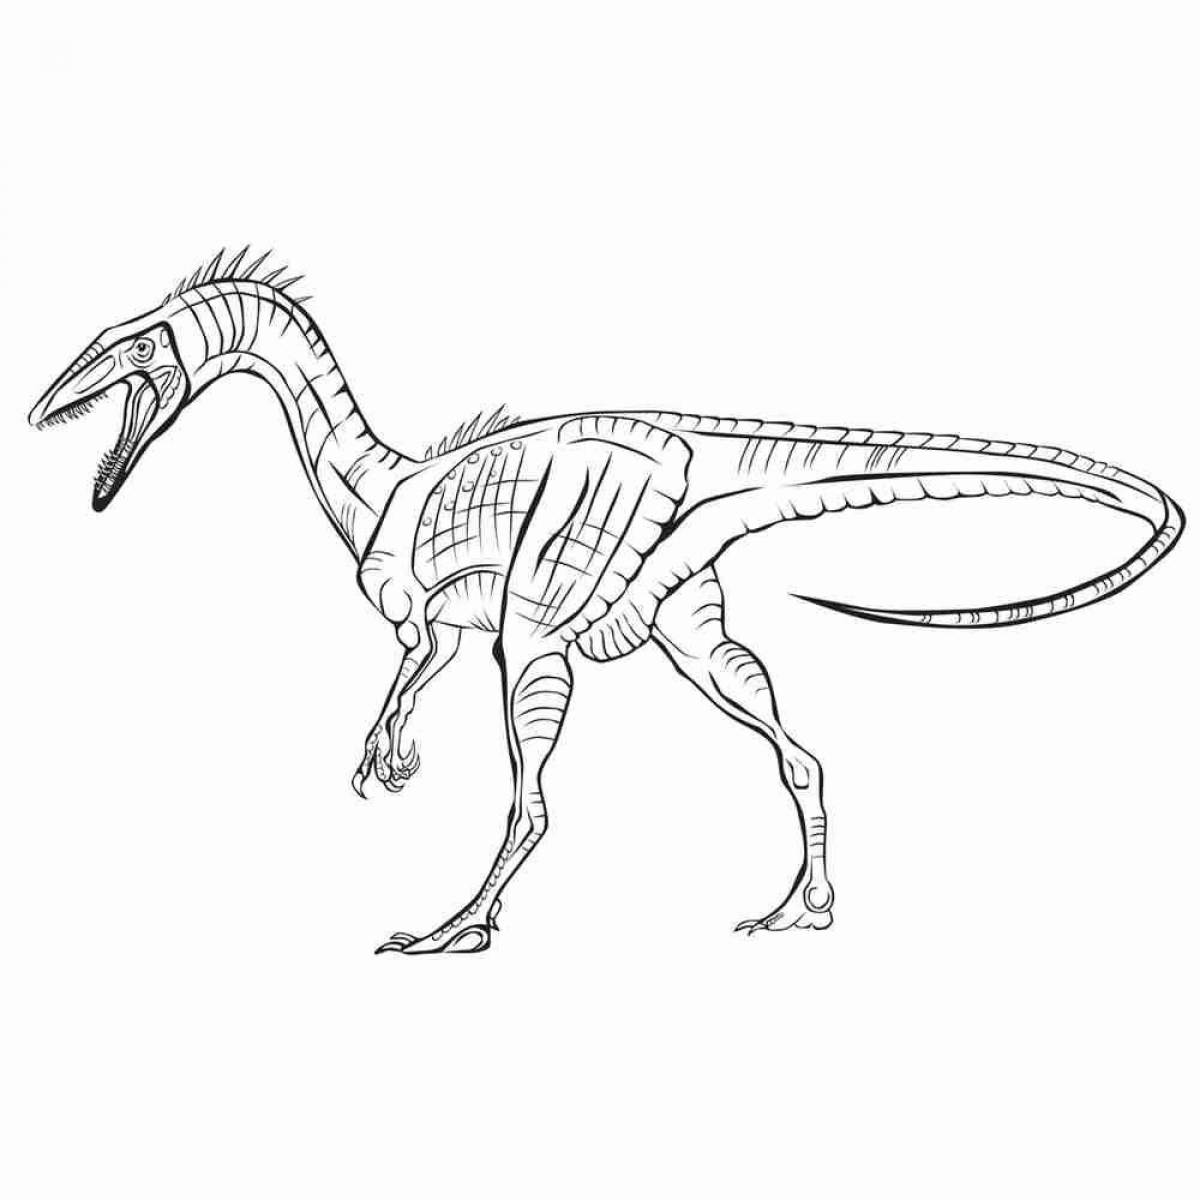 Анимированная страница раскраски мегалозавра